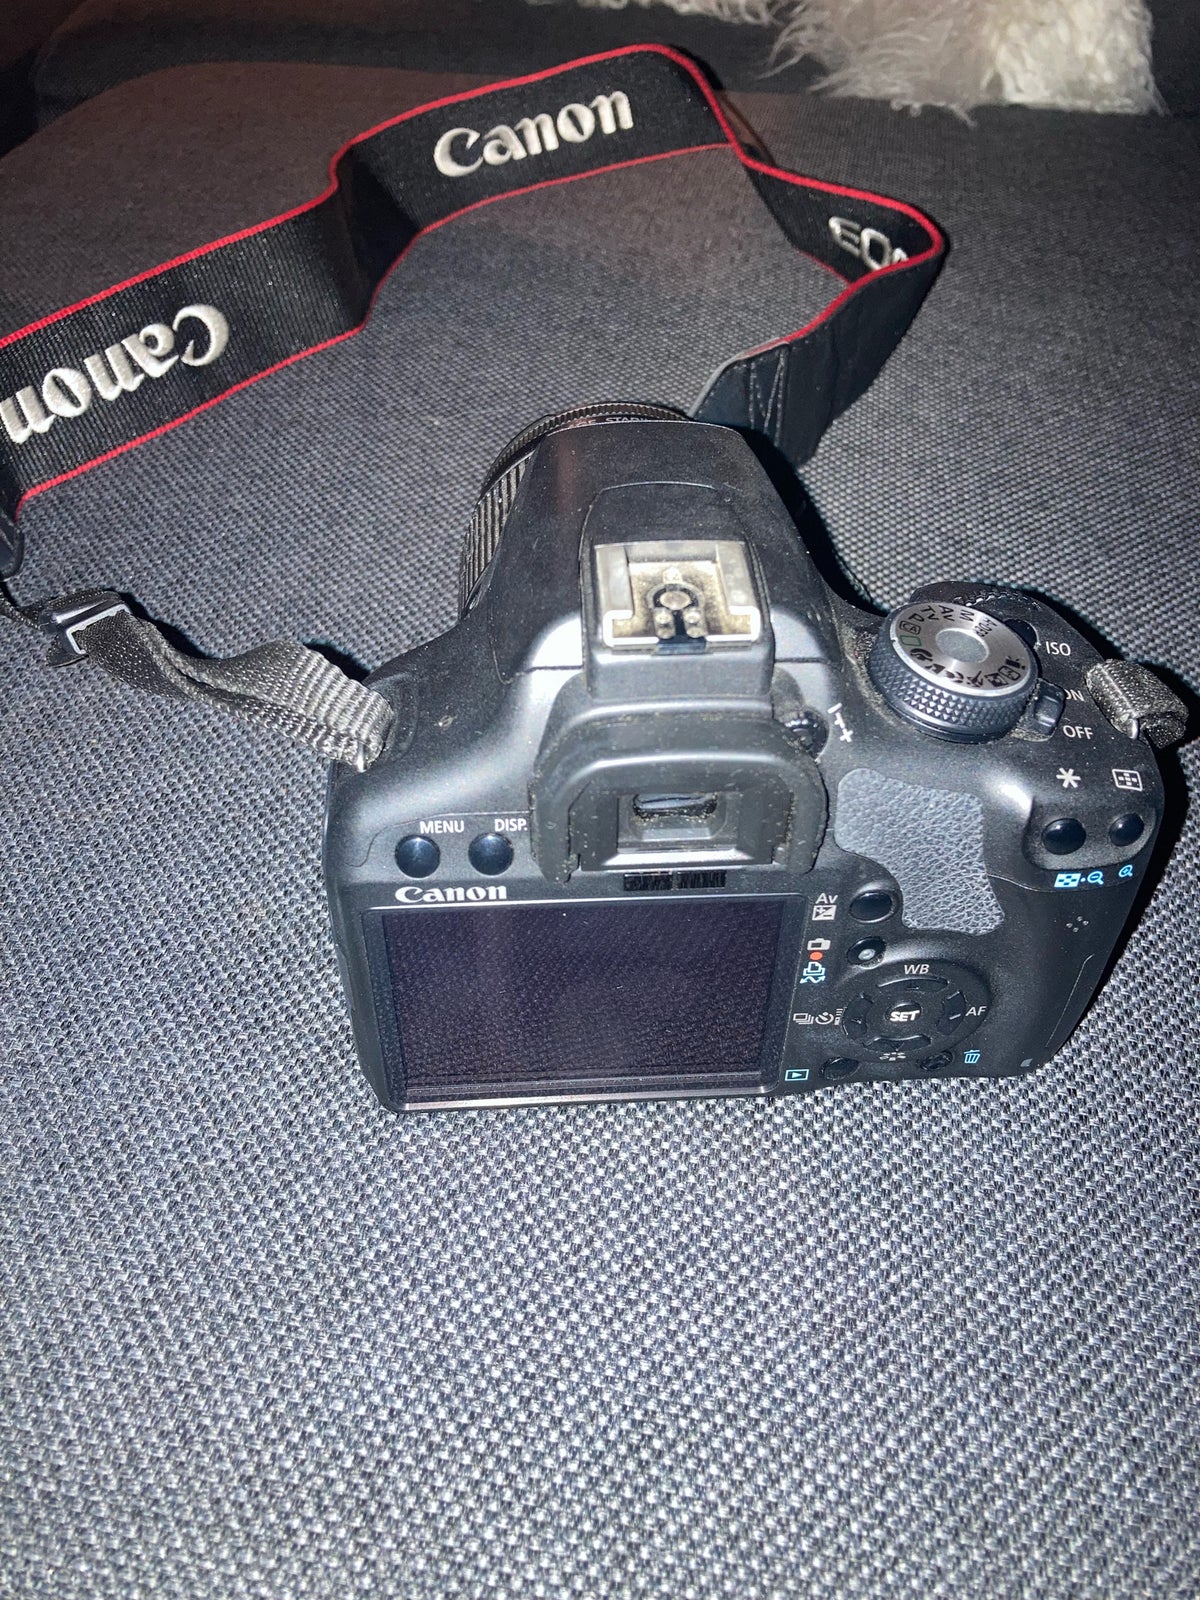 Digitalt spejlreflekskamera, Canon , EOS 500D